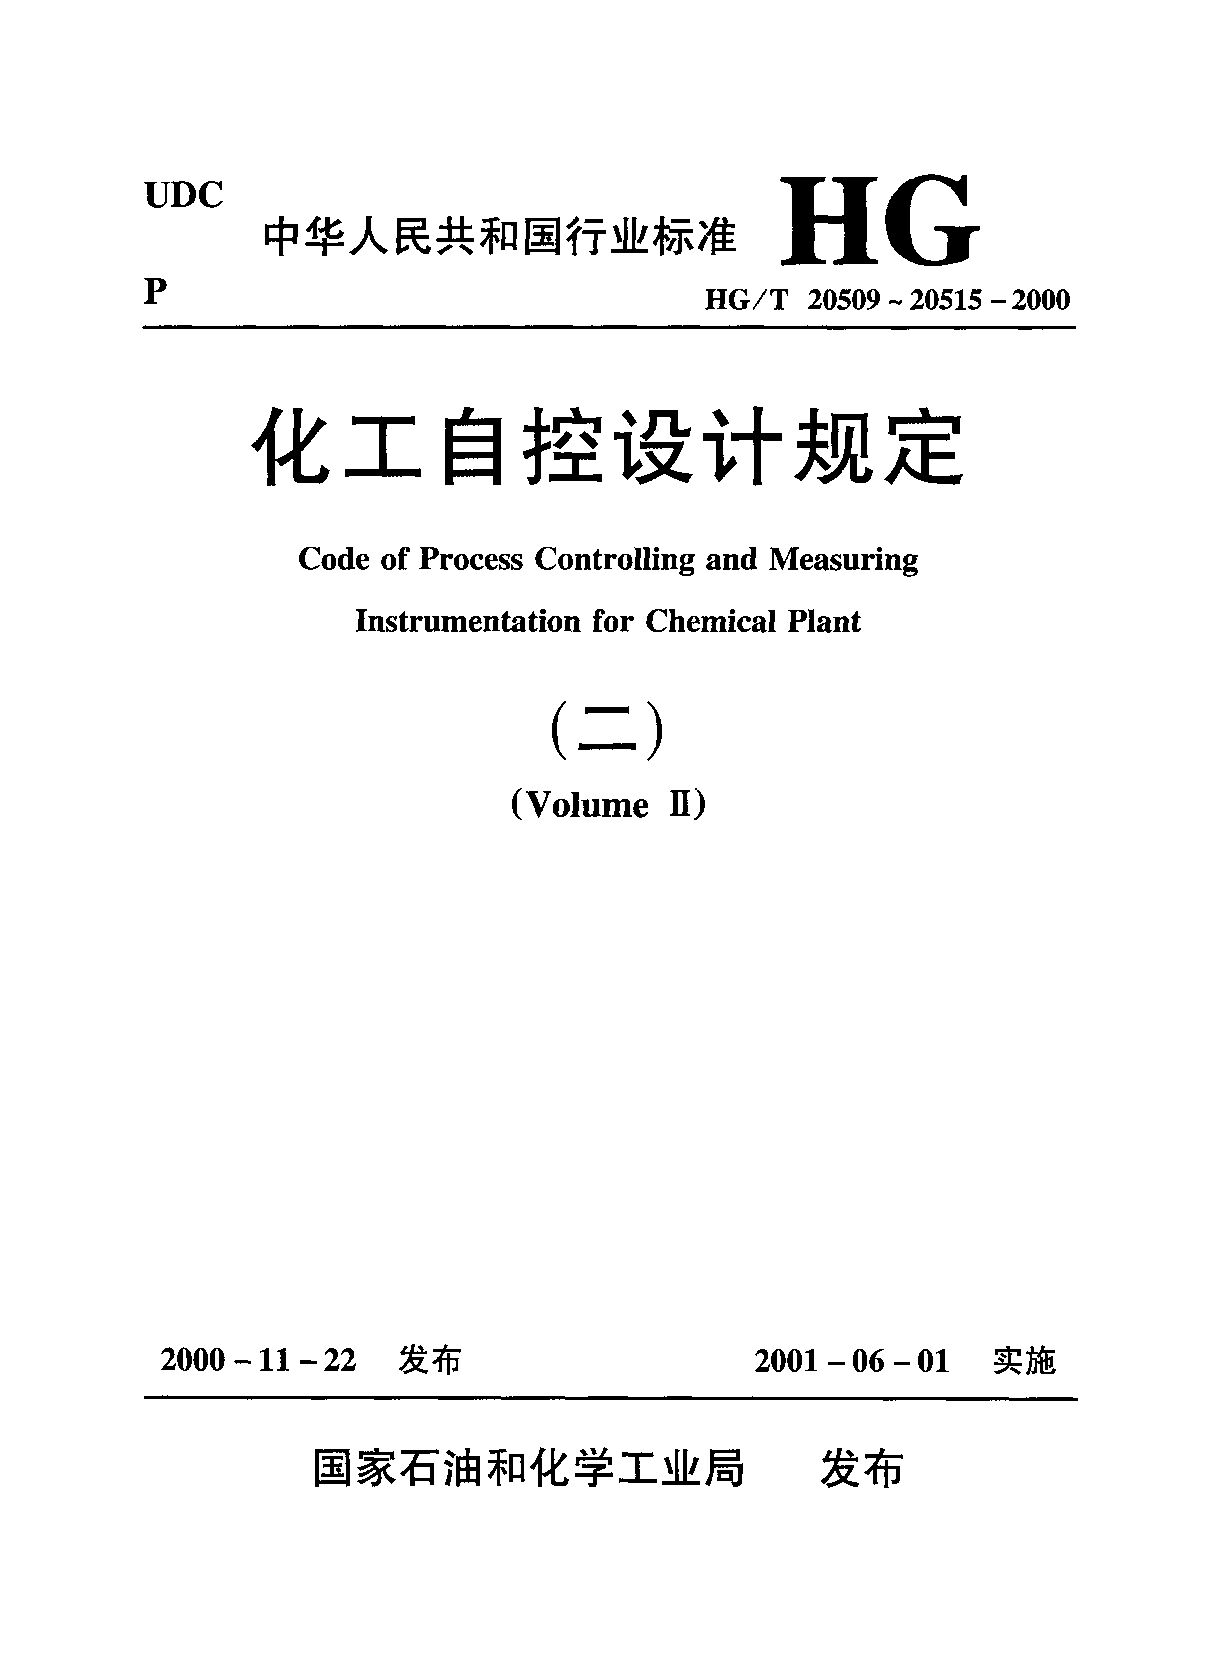 HG/T 20515-2000封面图